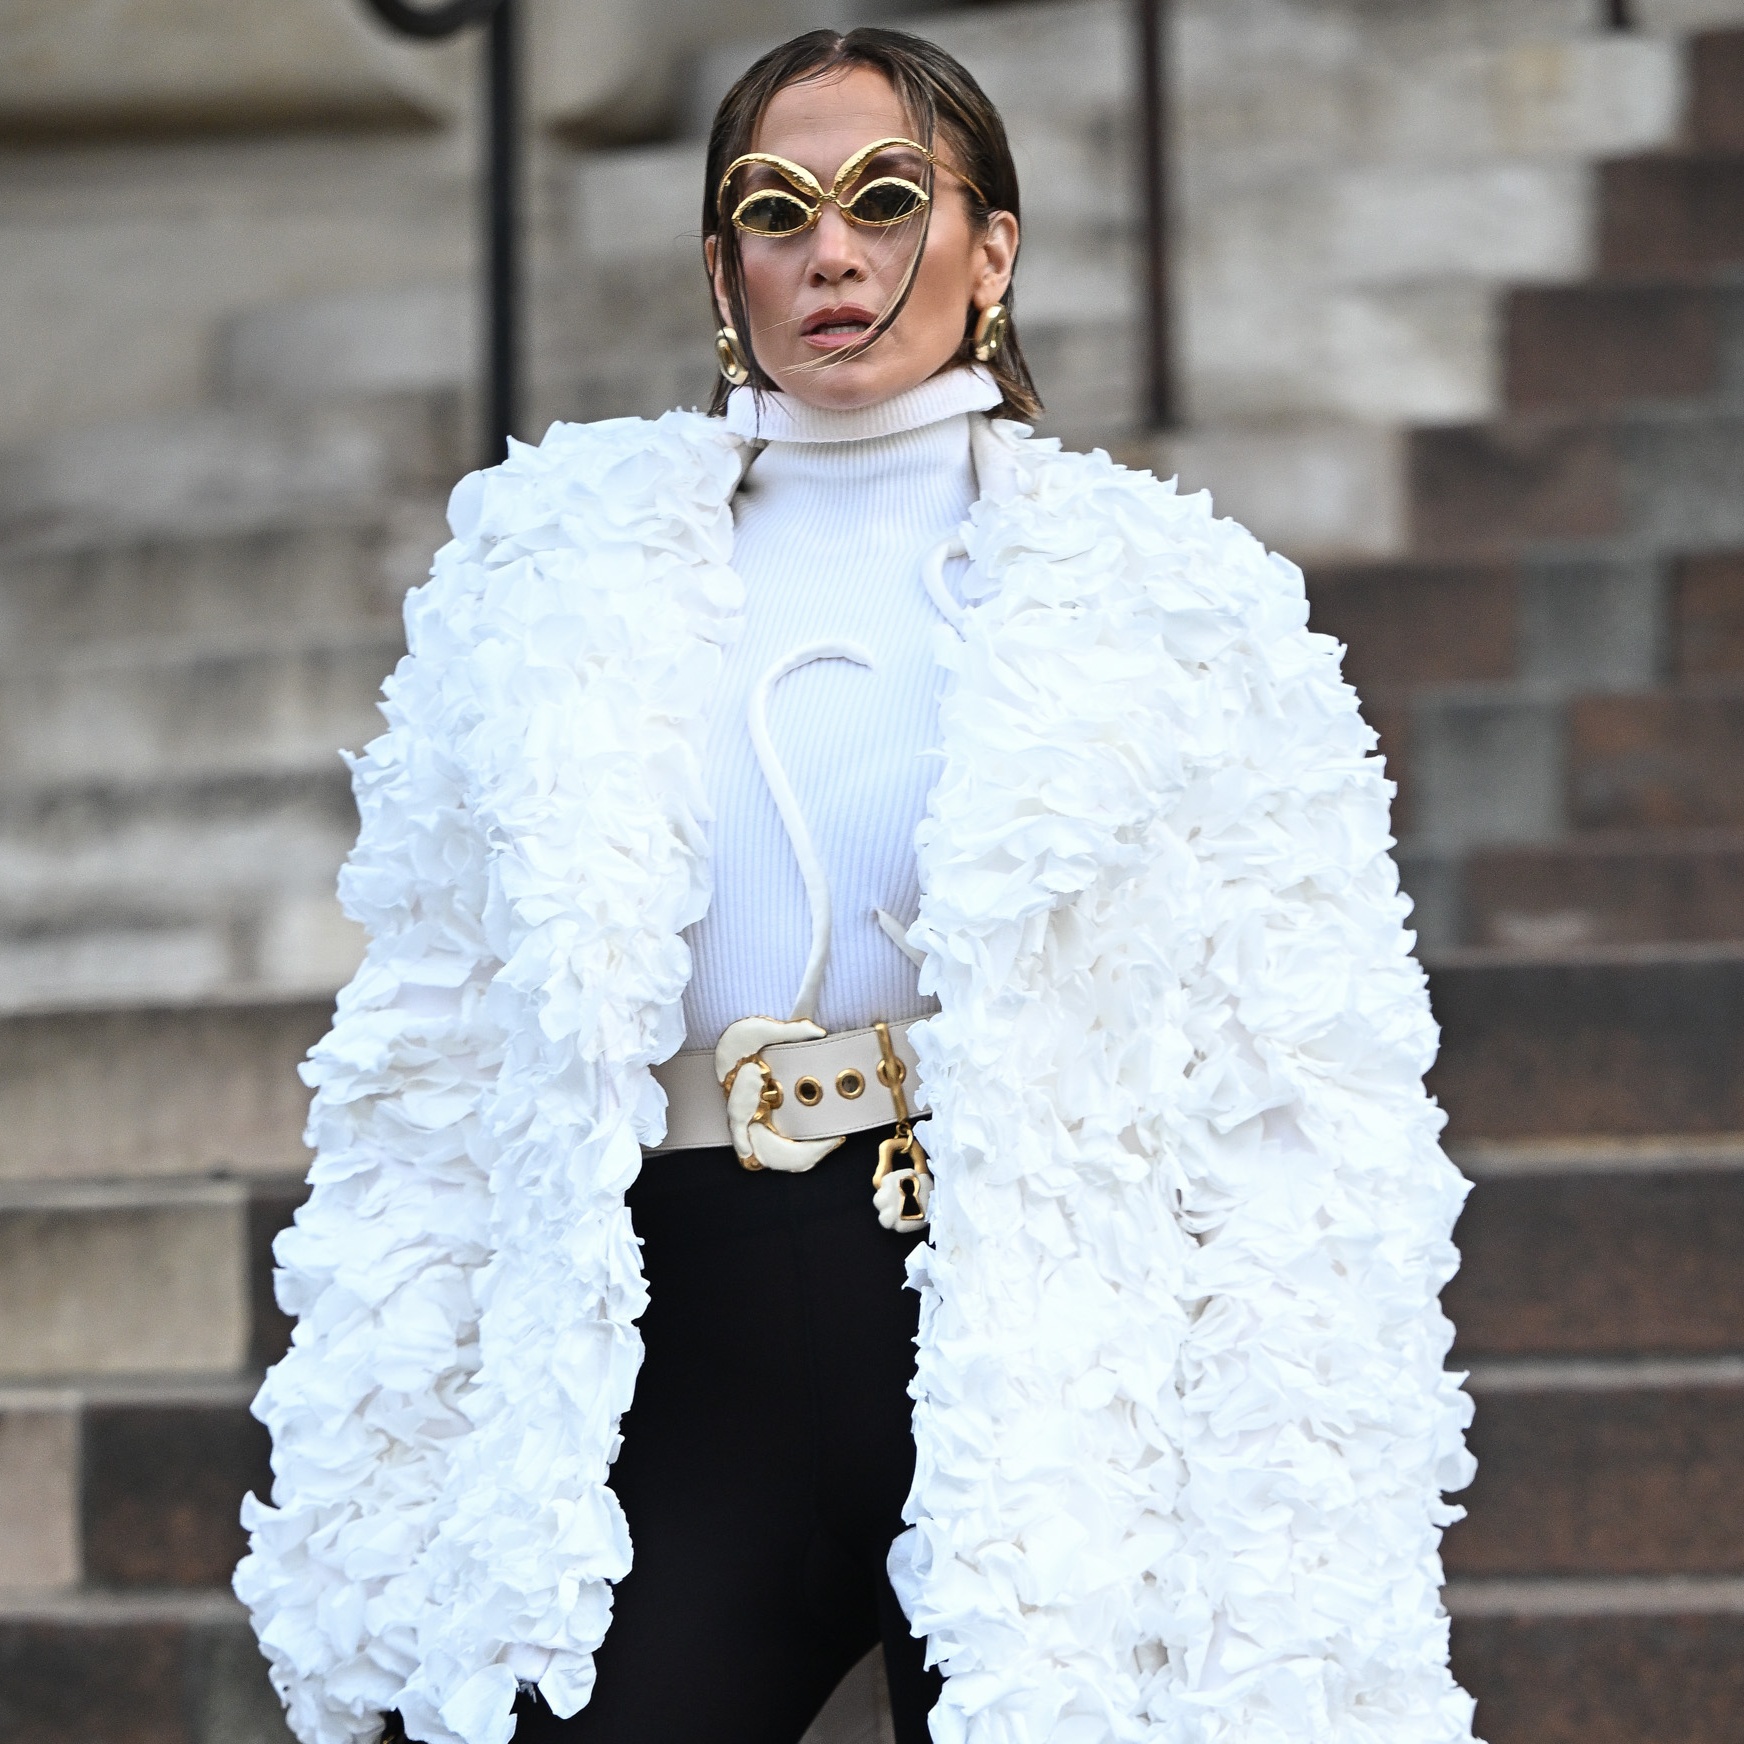 Jennifer Lopez changes her image, wears jacket made of rose petals